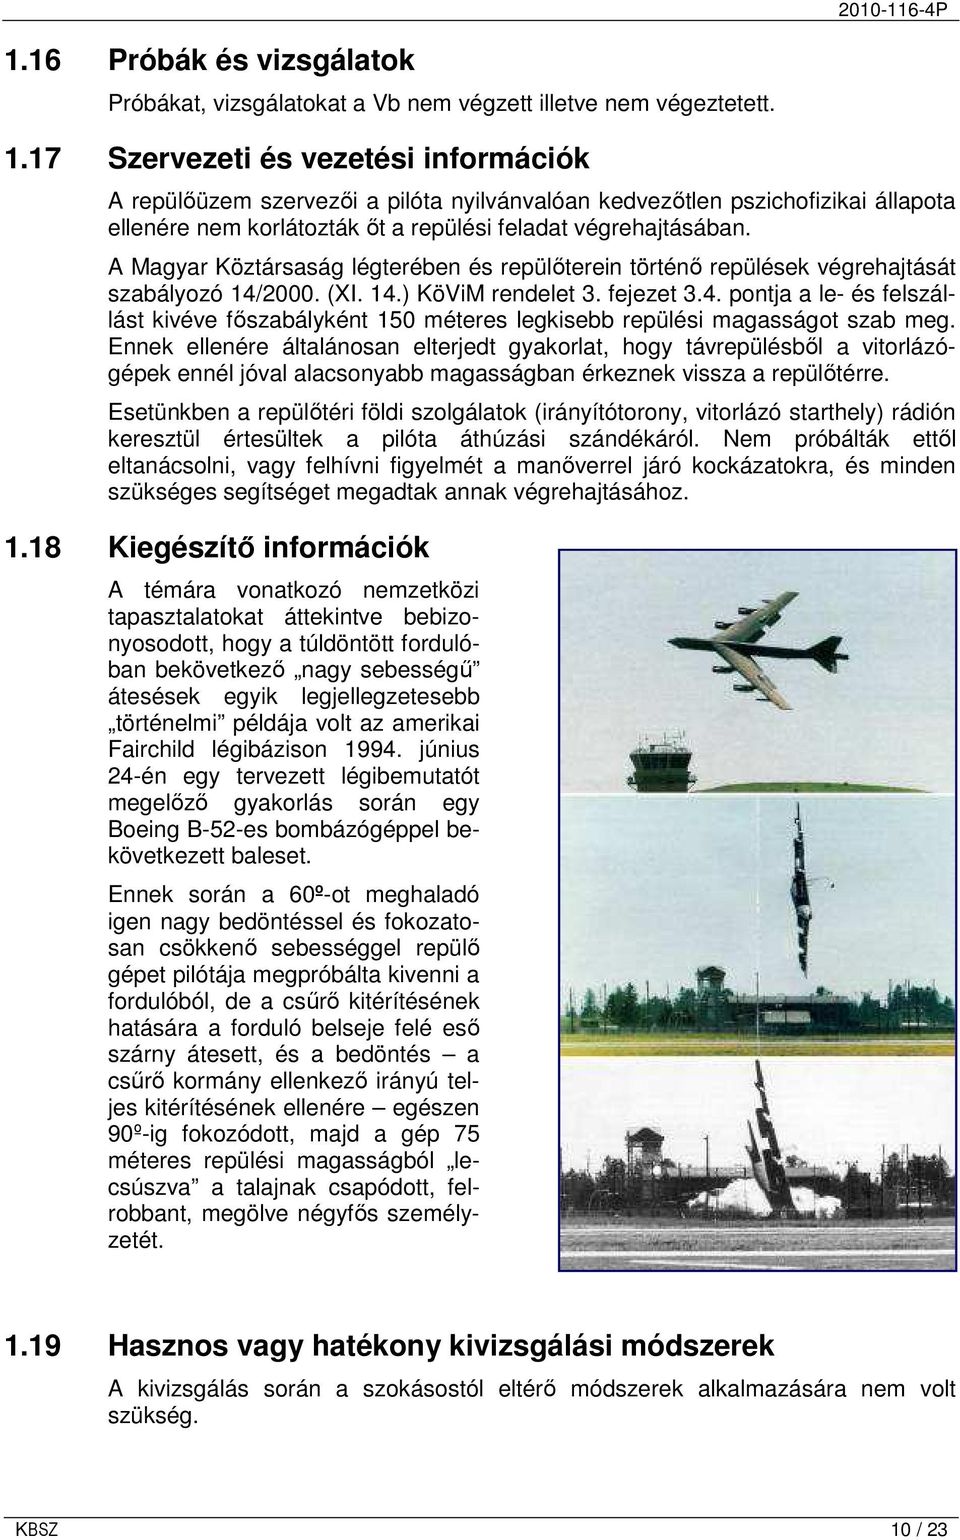 A Magyar Köztársaság légterében és repülıterein történı repülések végrehajtását szabályozó 14/2000. (XI. 14.) KöViM rendelet 3. fejezet 3.4. pontja a le- és felszállást kivéve fıszabályként 150 méteres legkisebb repülési magasságot szab meg.